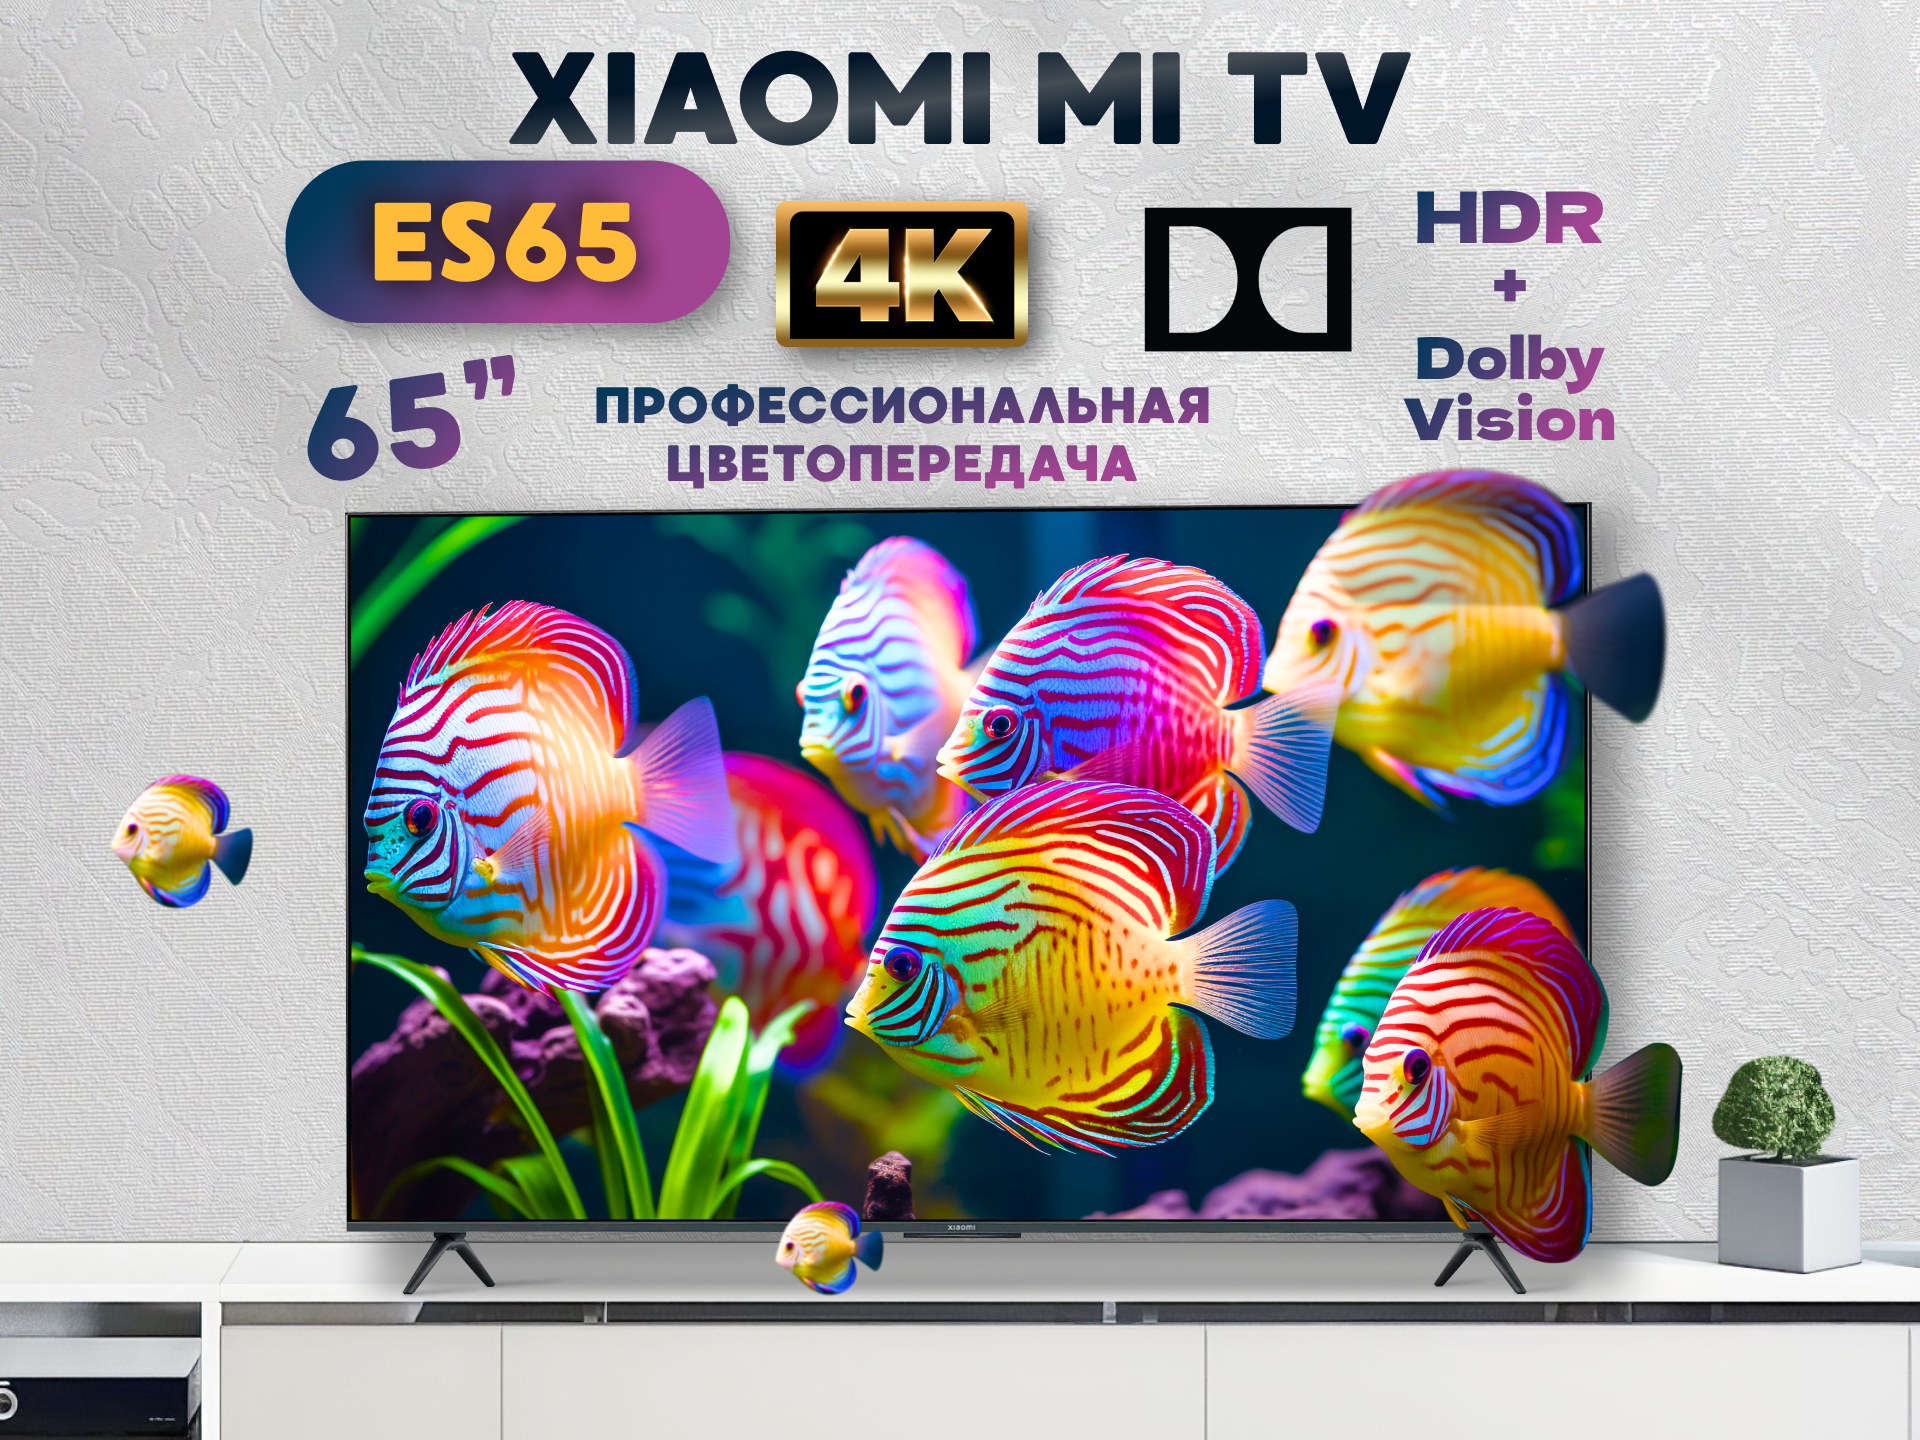 Телевизор Xiaomi MI TV ES65, 65"(165 см), UHD 4K, купить в Москве, цены в интернет-магазинах на Мегамаркет